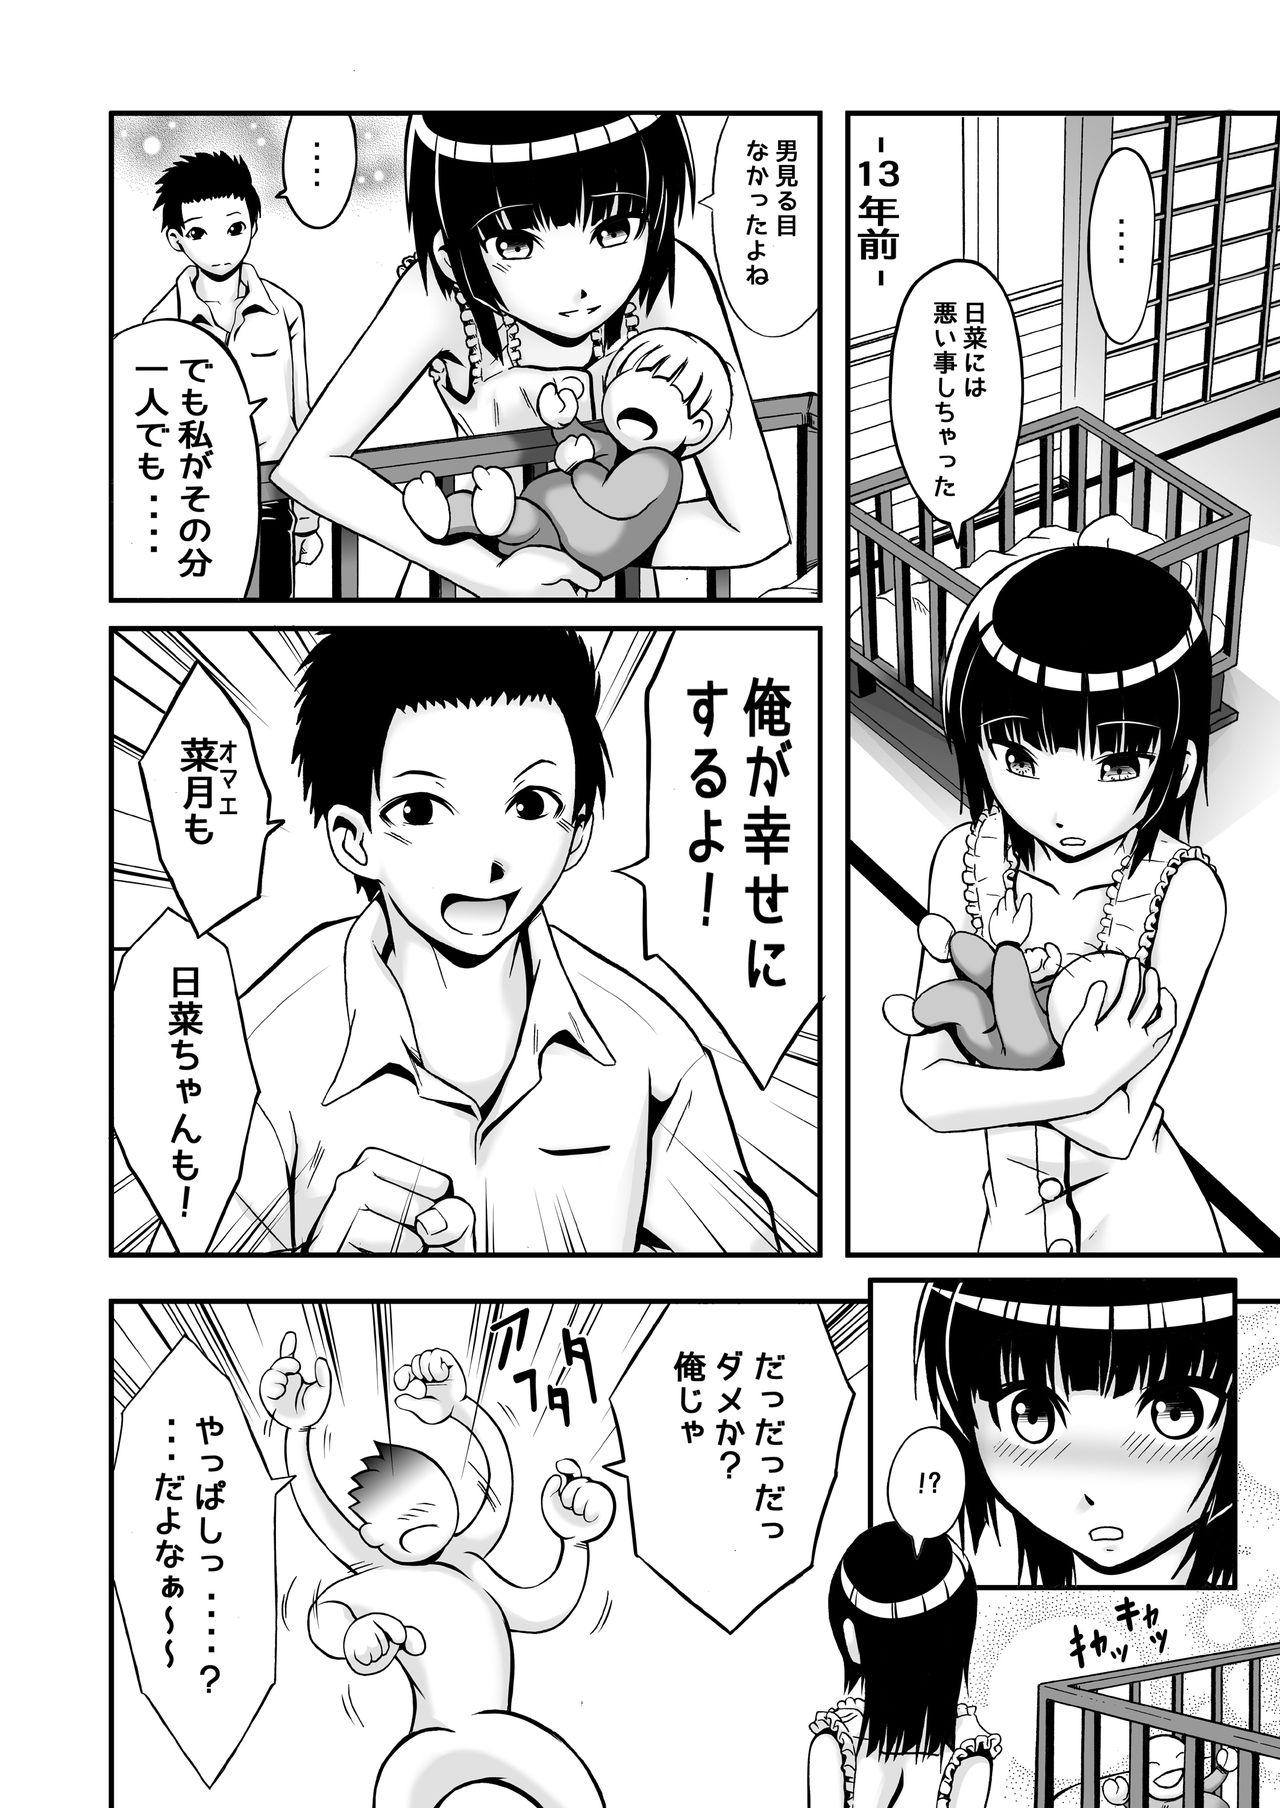 Girl Gets Fucked Watashi ga inaito damena ndakara! Suckingcock - Page 7